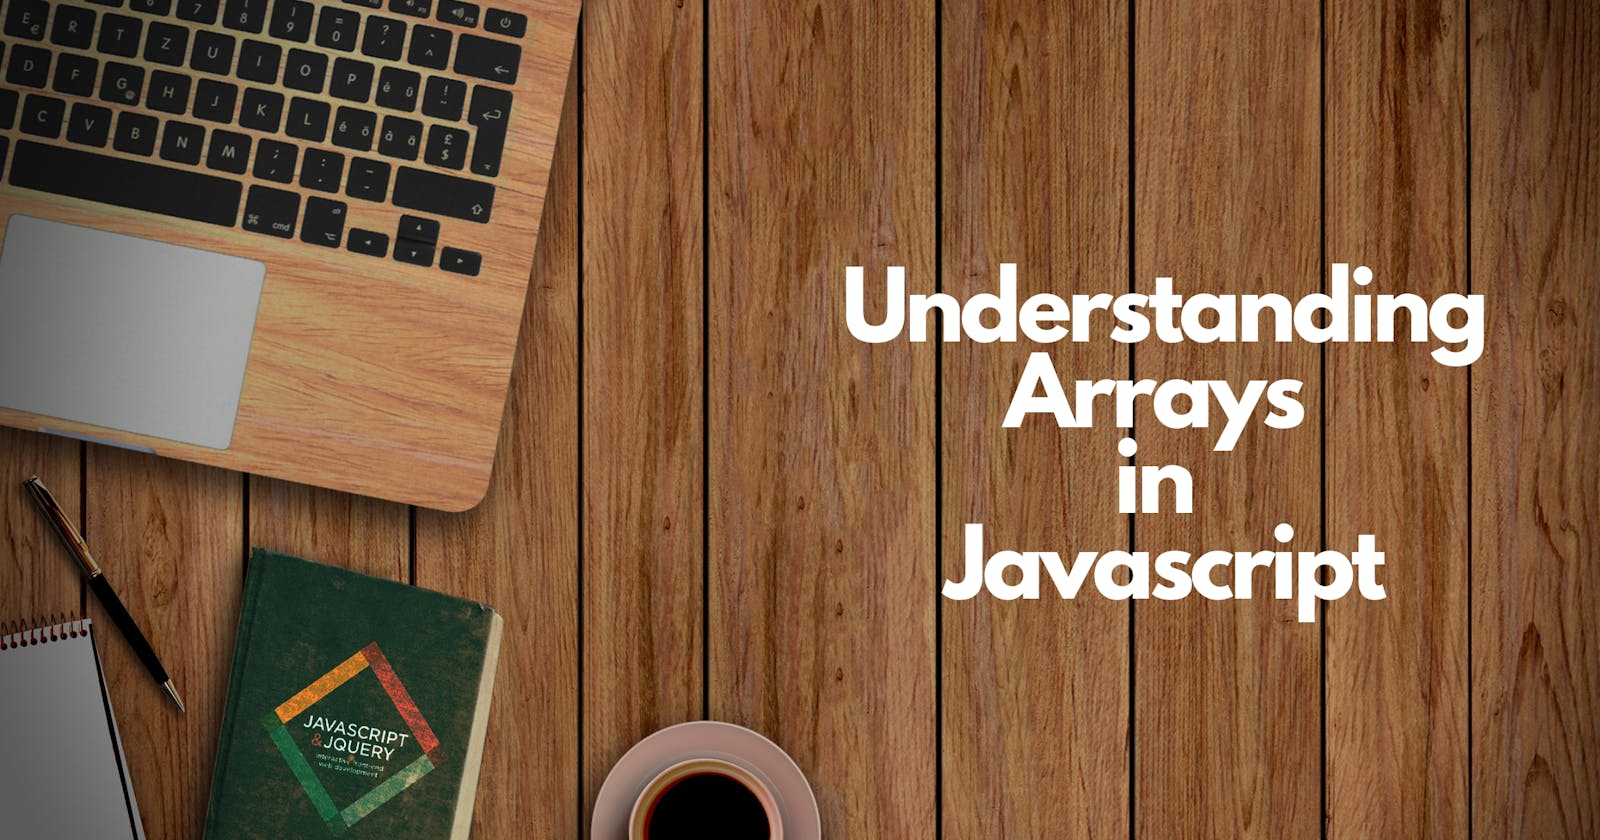 Understanding Arrays in Javascript